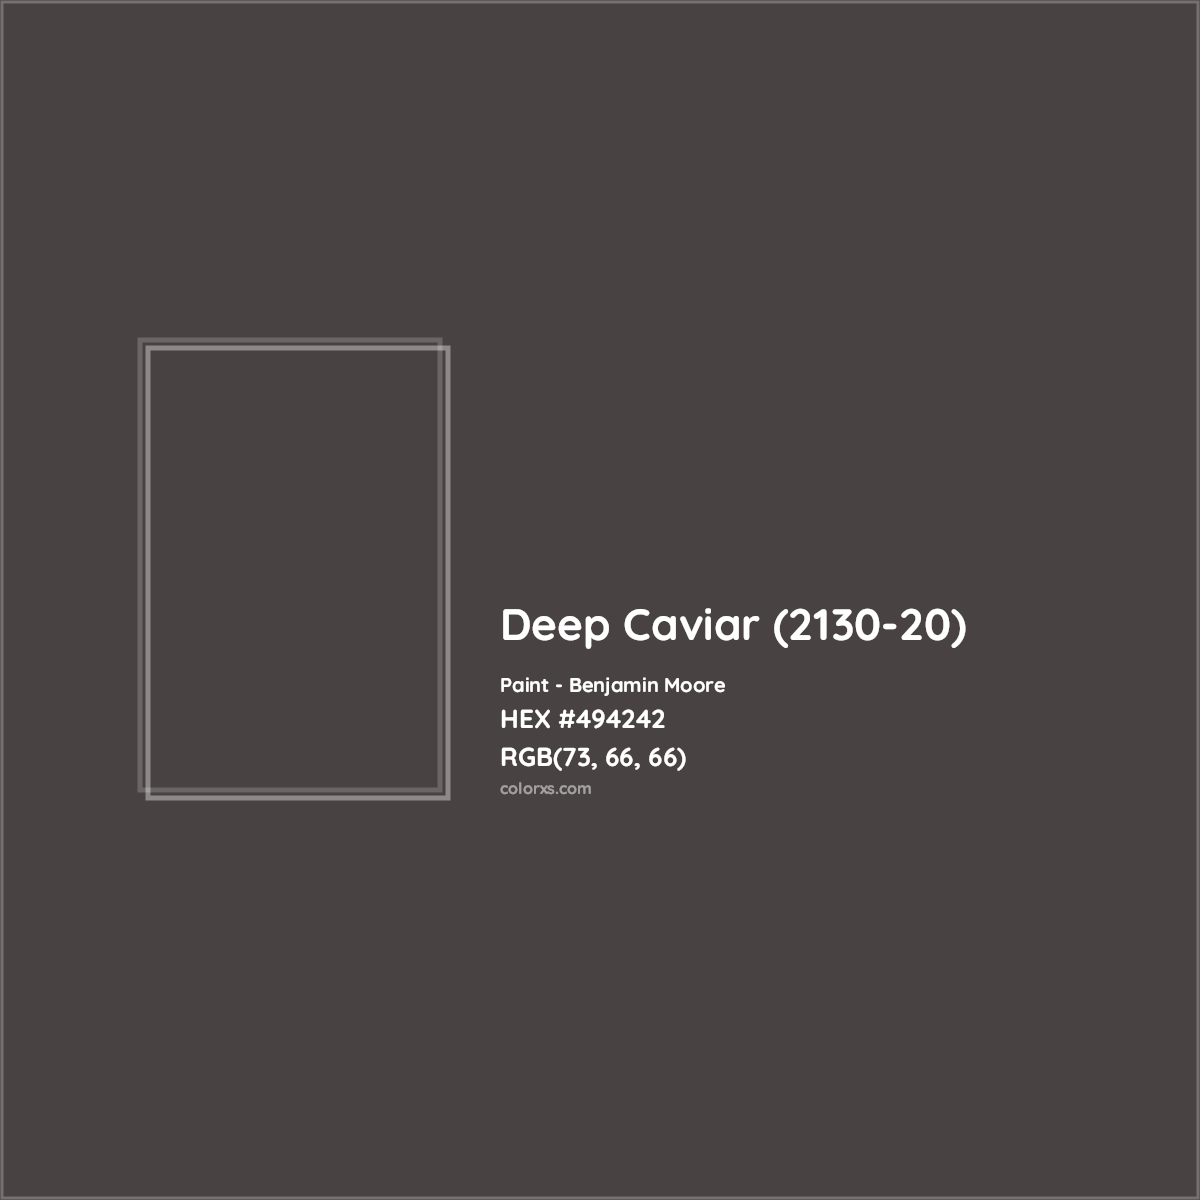 HEX #494242 Deep Caviar (2130-20) Paint Benjamin Moore - Color Code